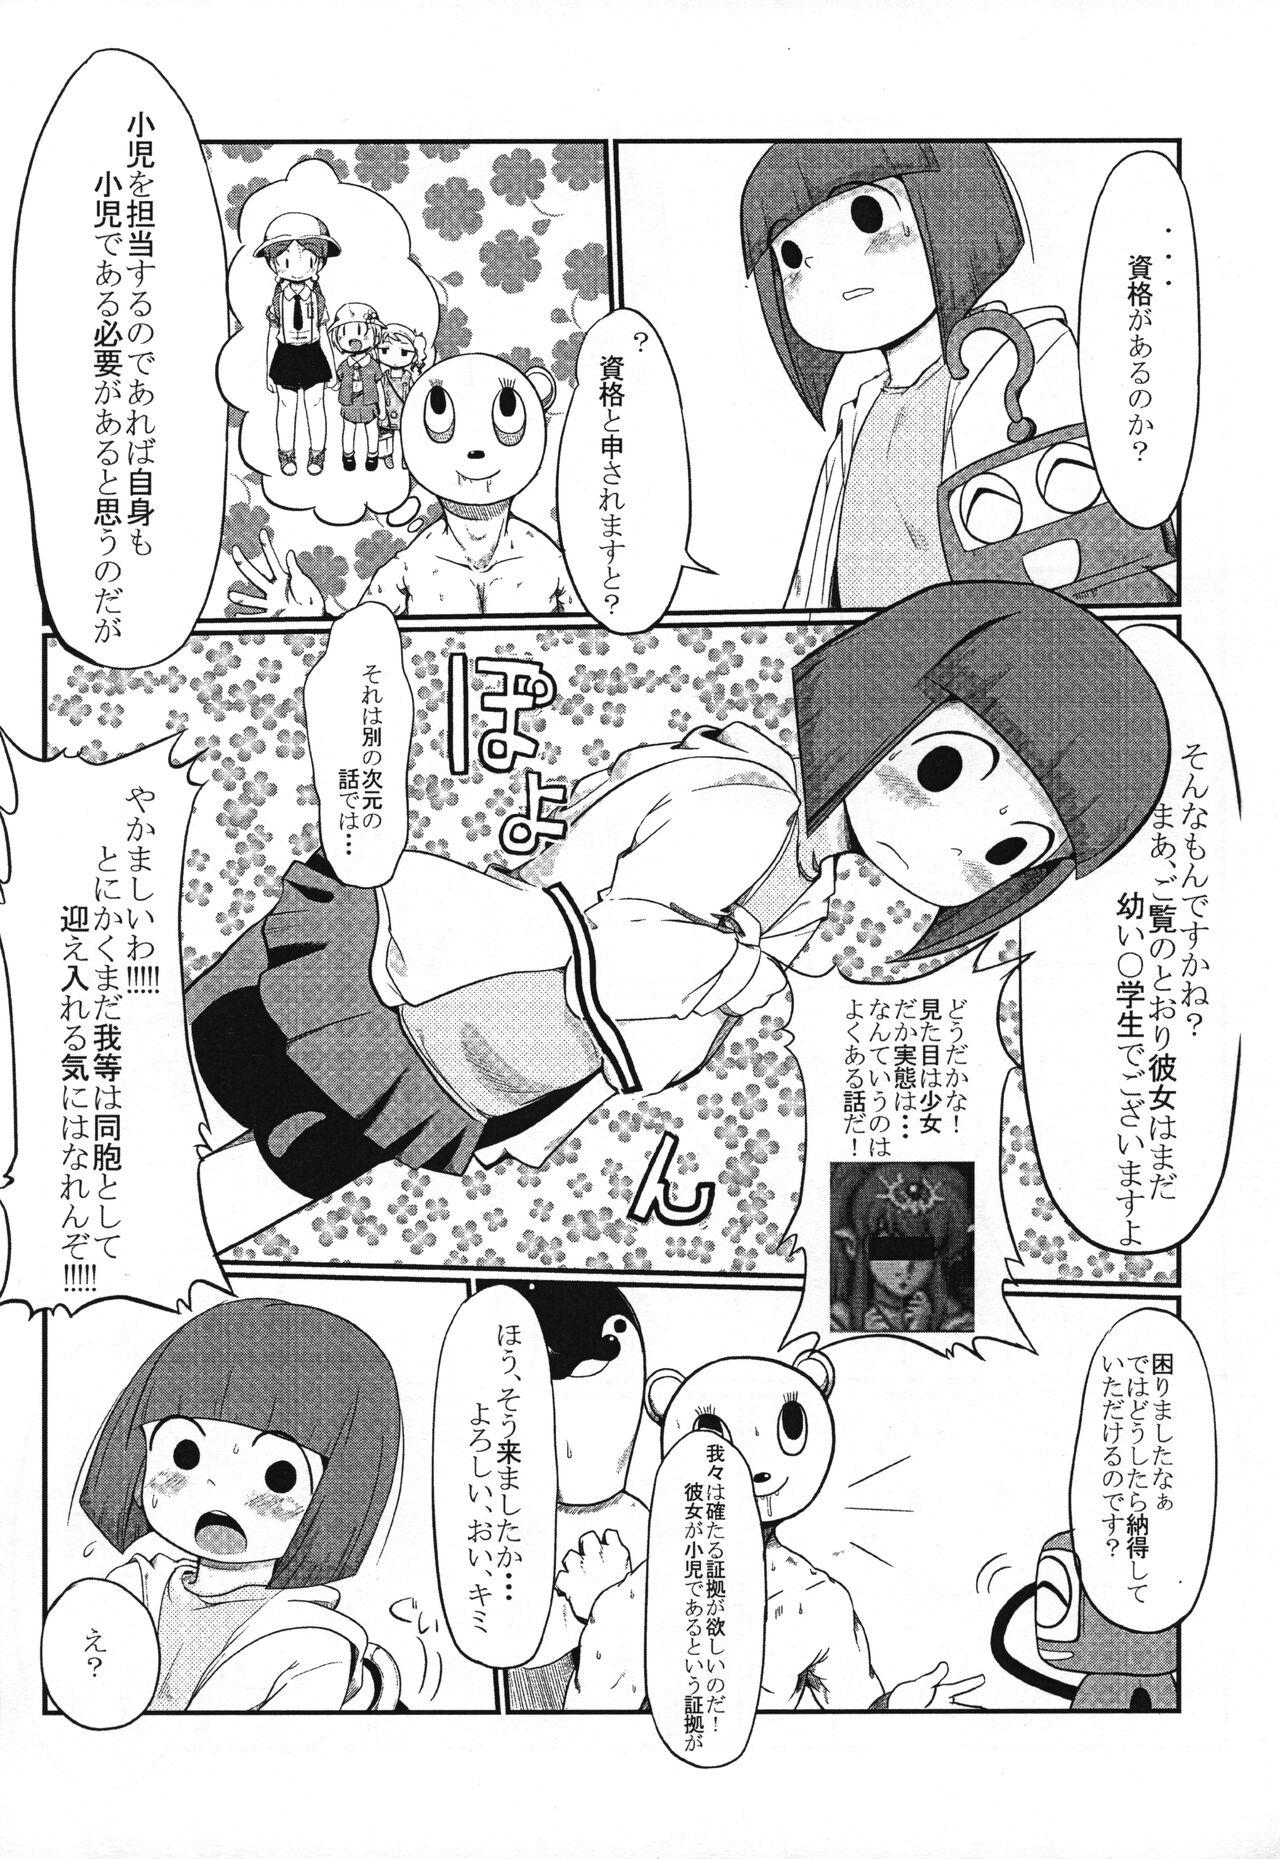 Shouni-you PASMO no Poster ga Kieta Ken 4